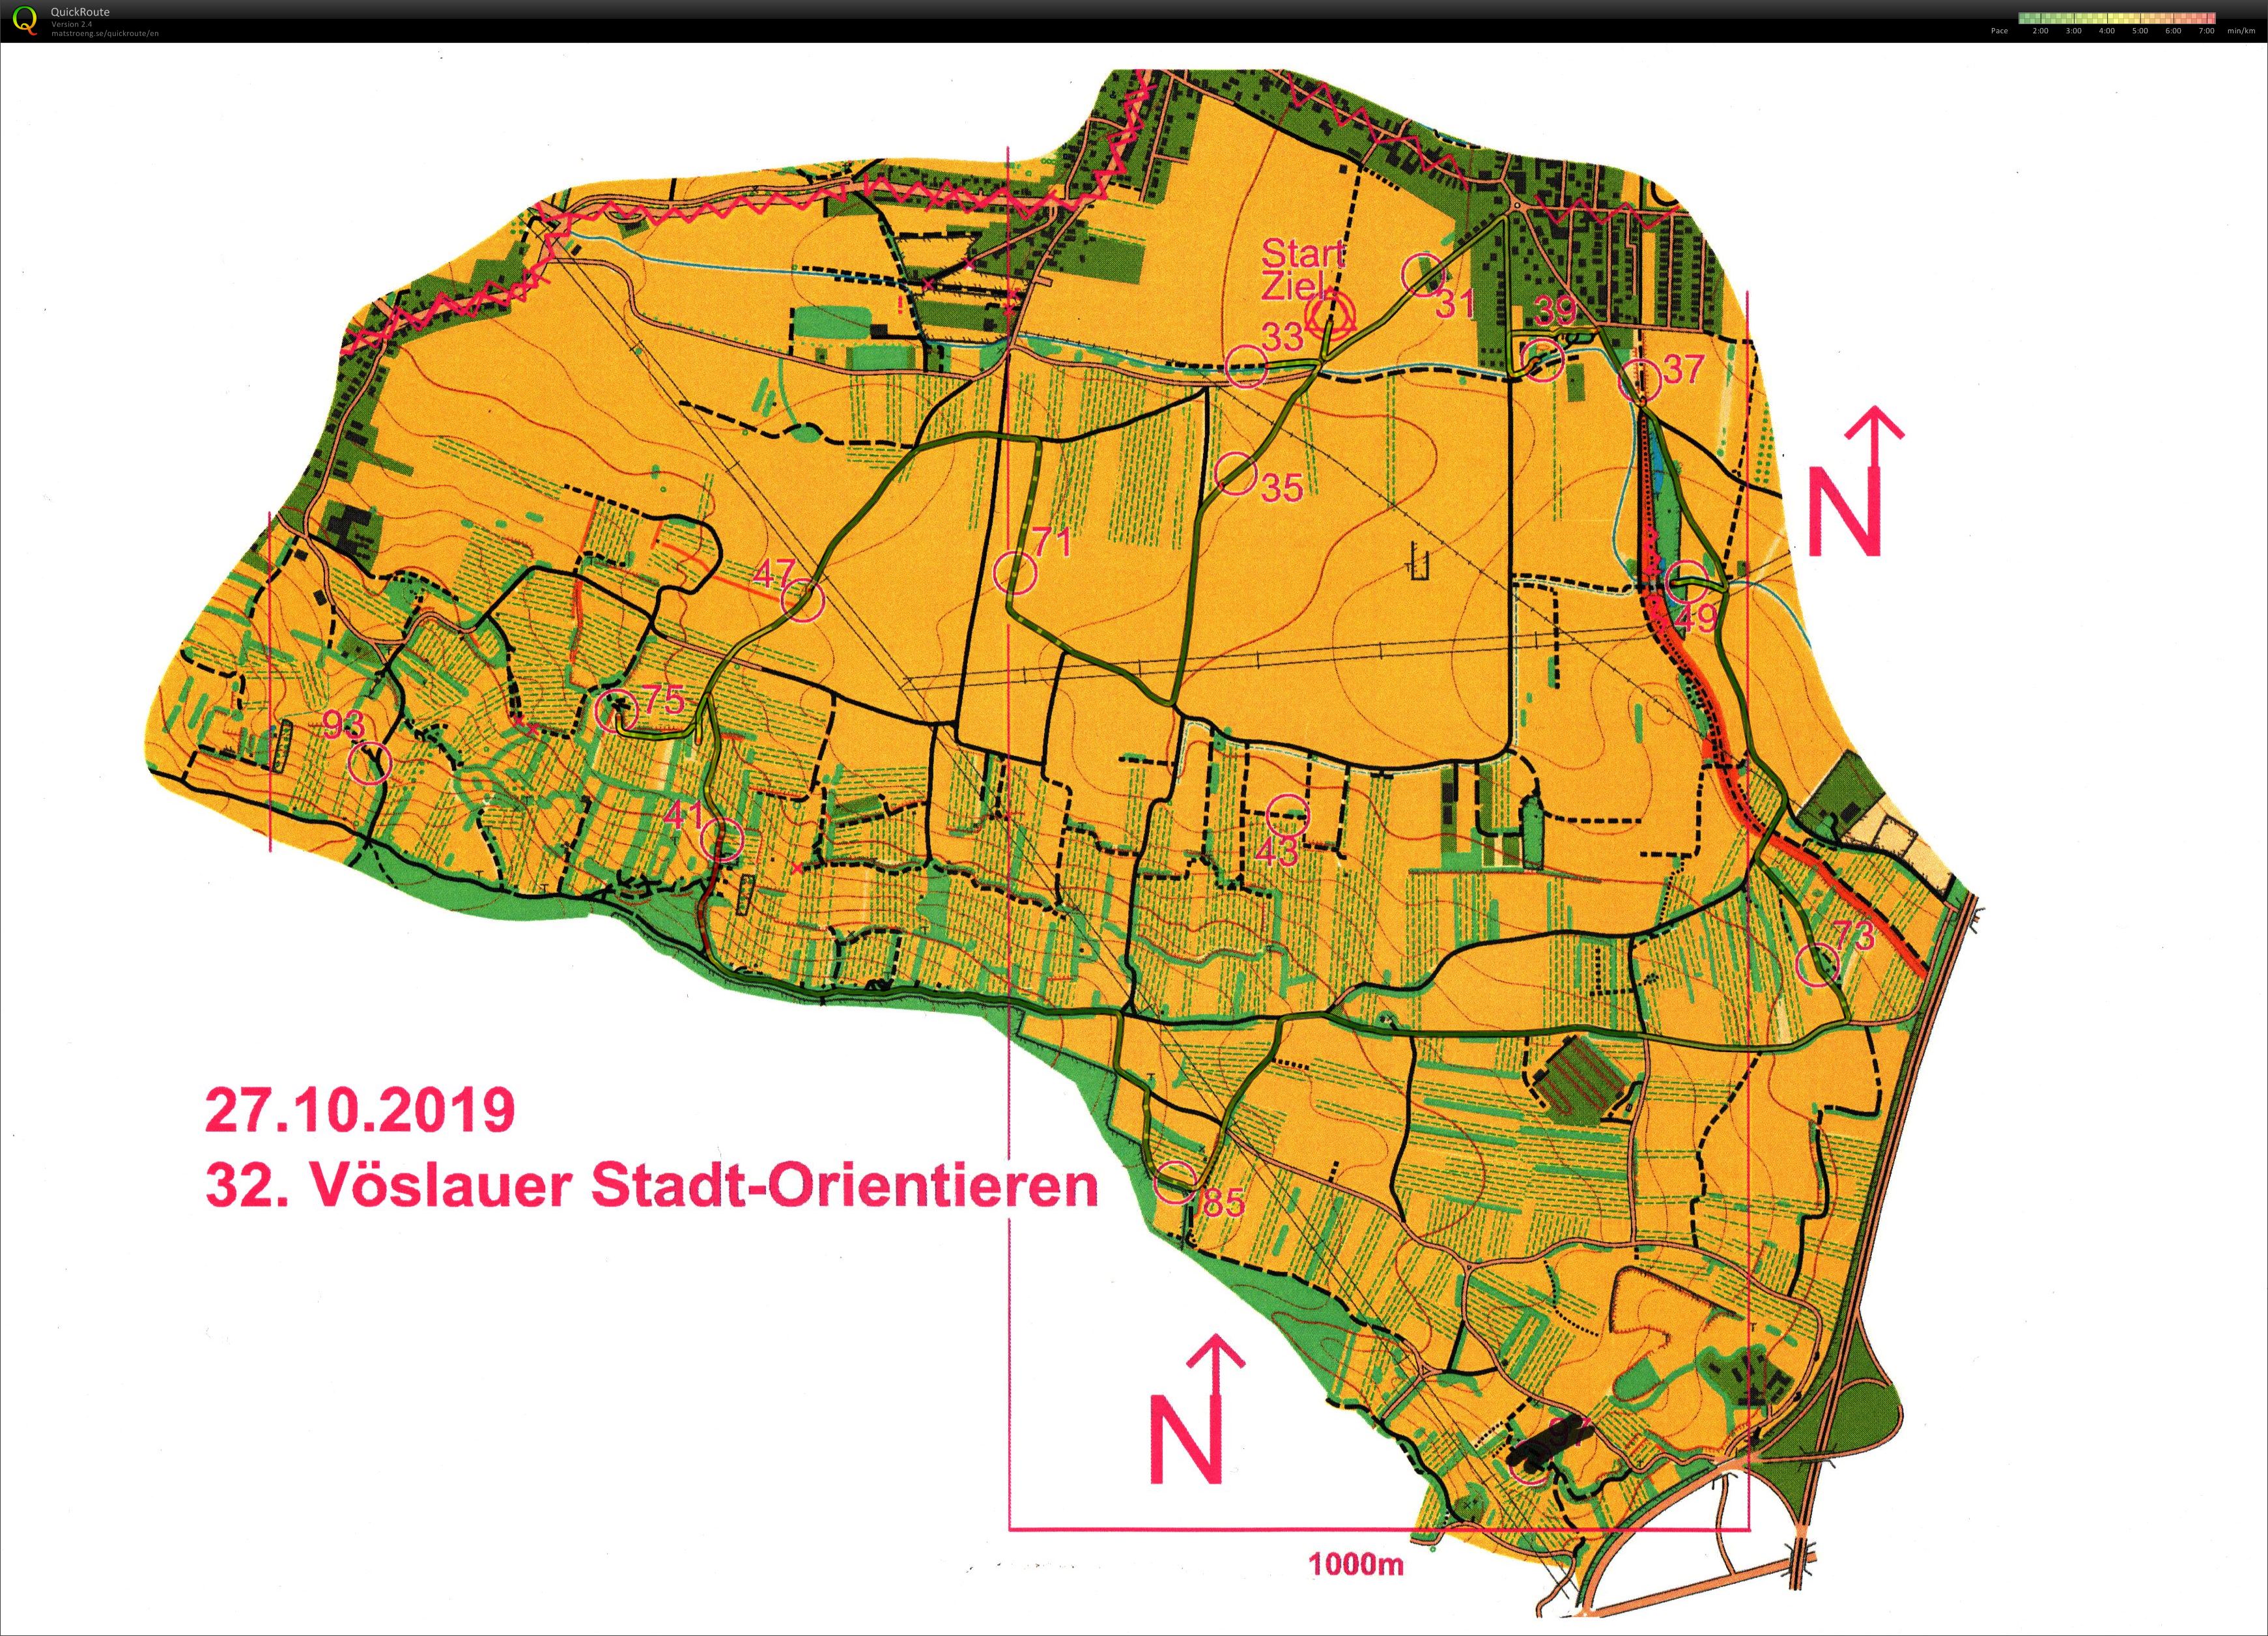 Vöslauer Stadt-Orientieren (2019-10-27)